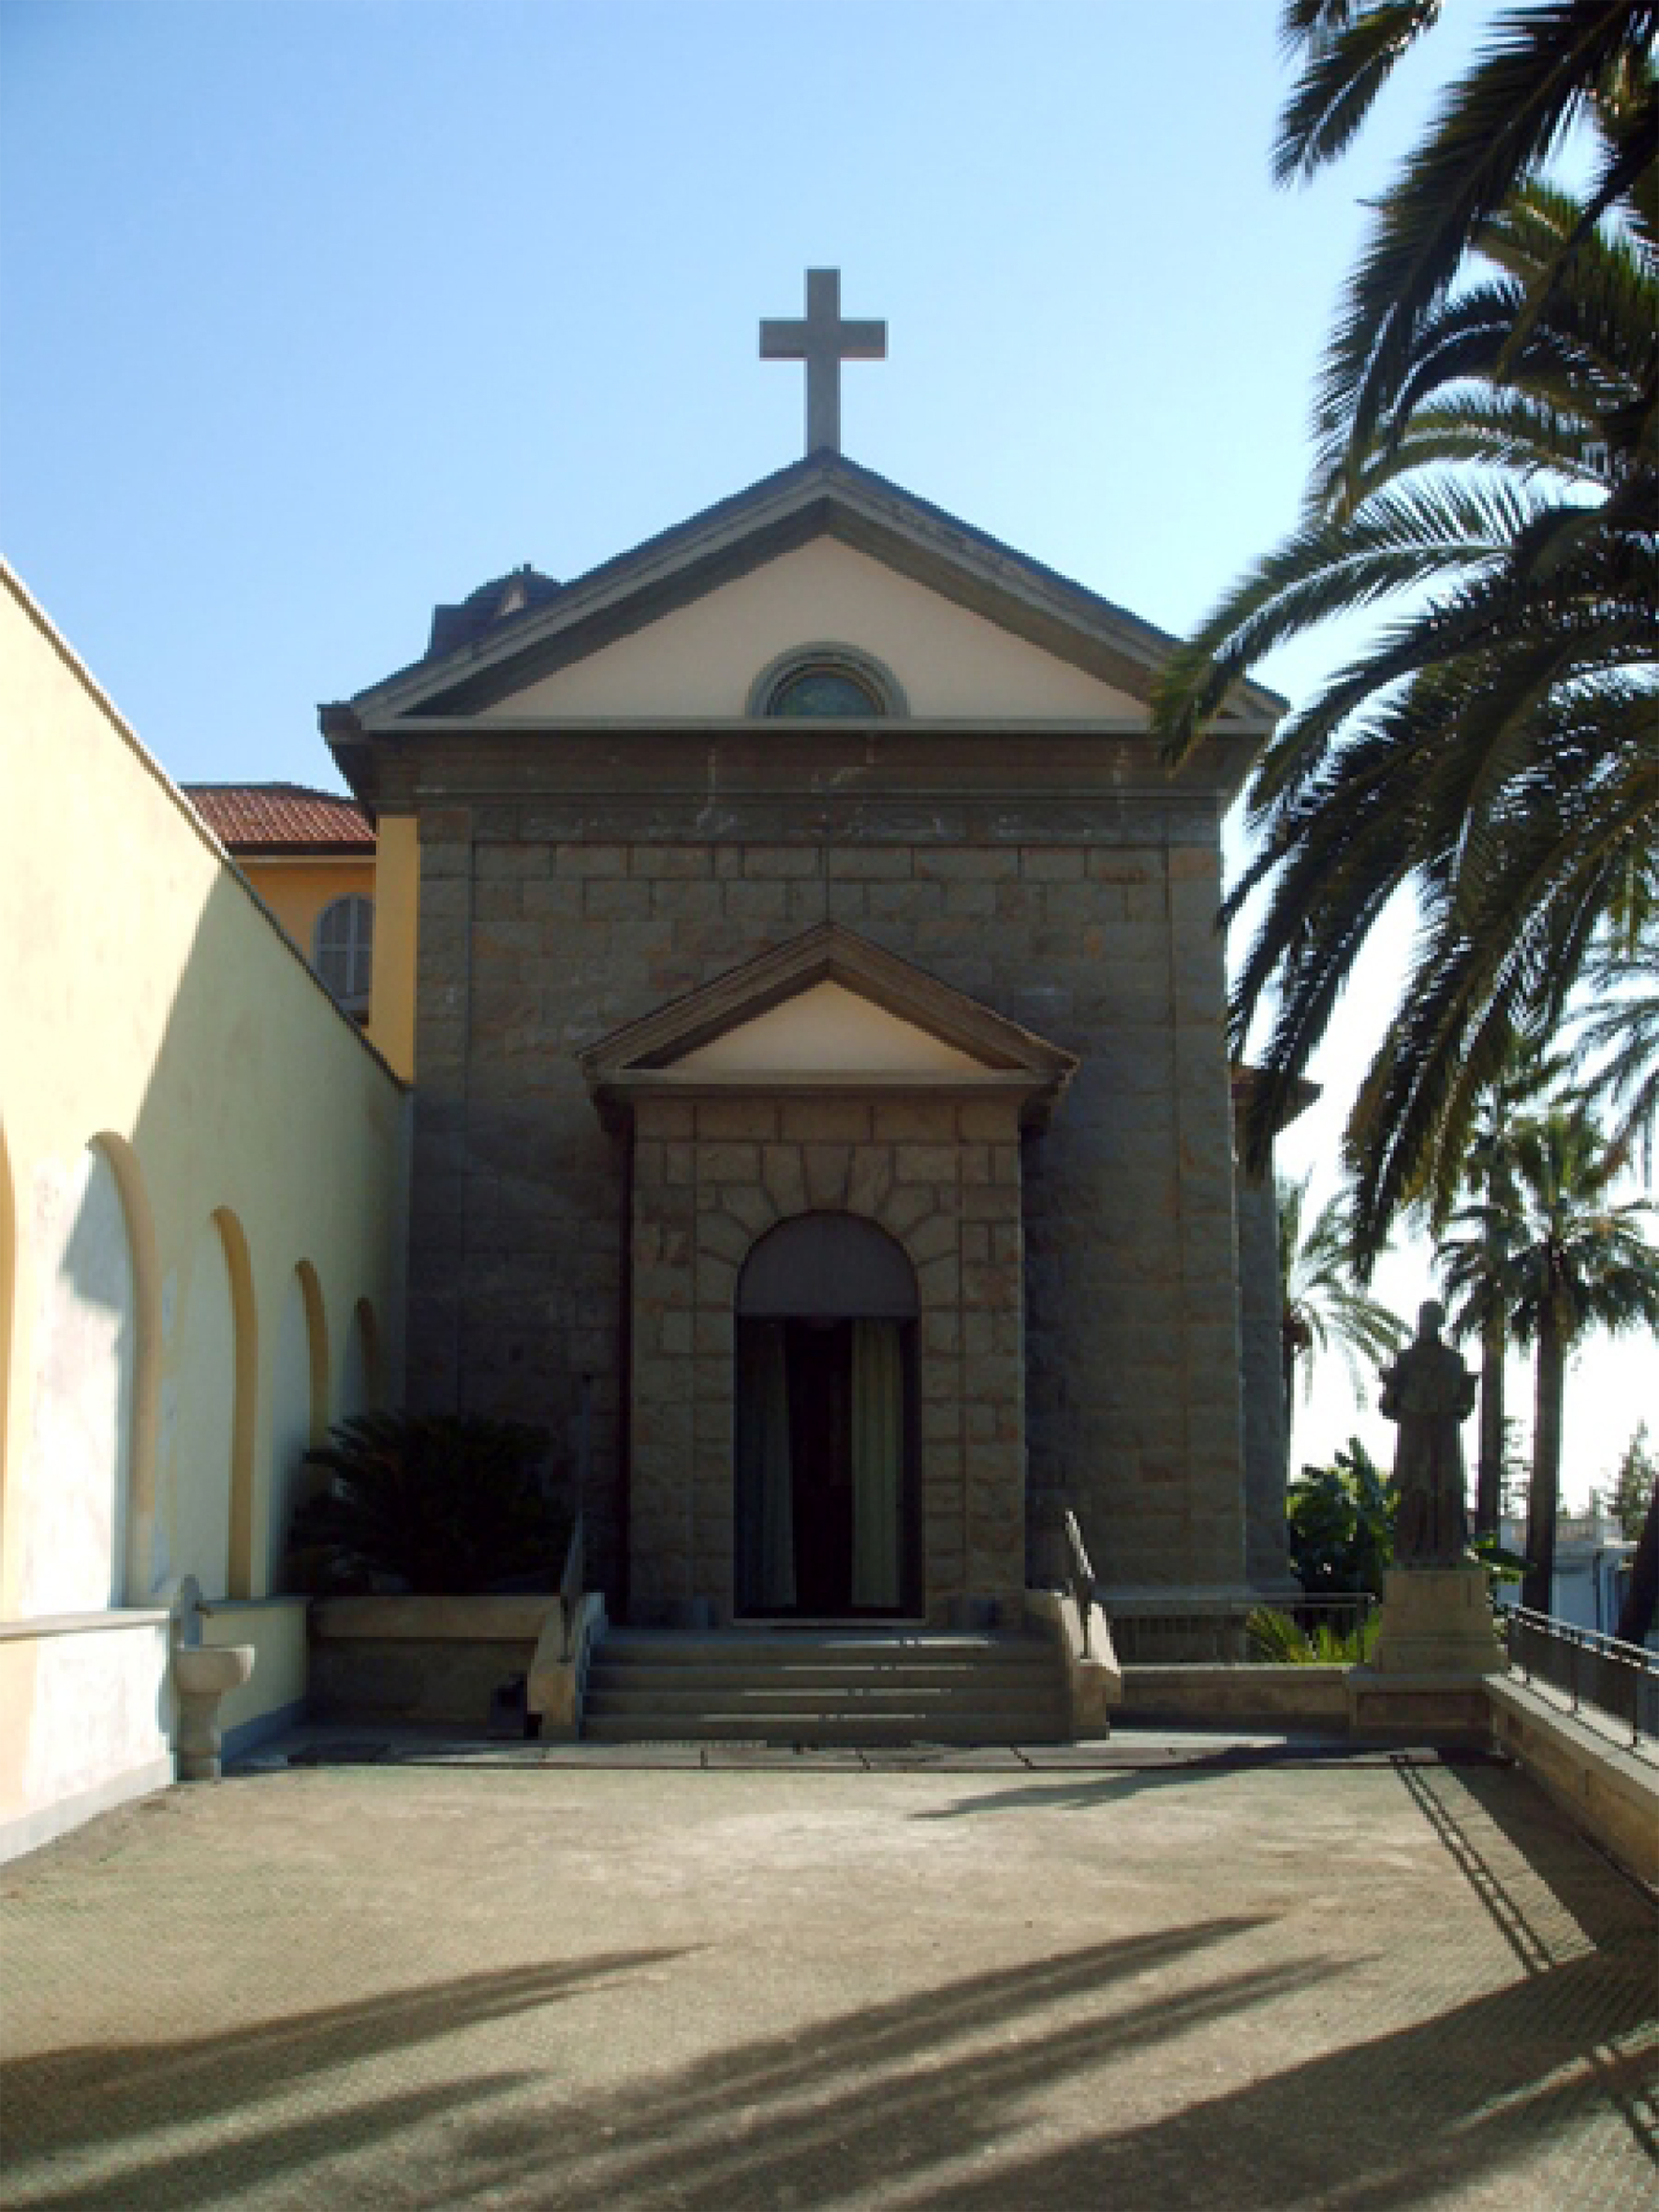 Monastero della Visitazione (monastero) - Sanremo (IM)  (XX)